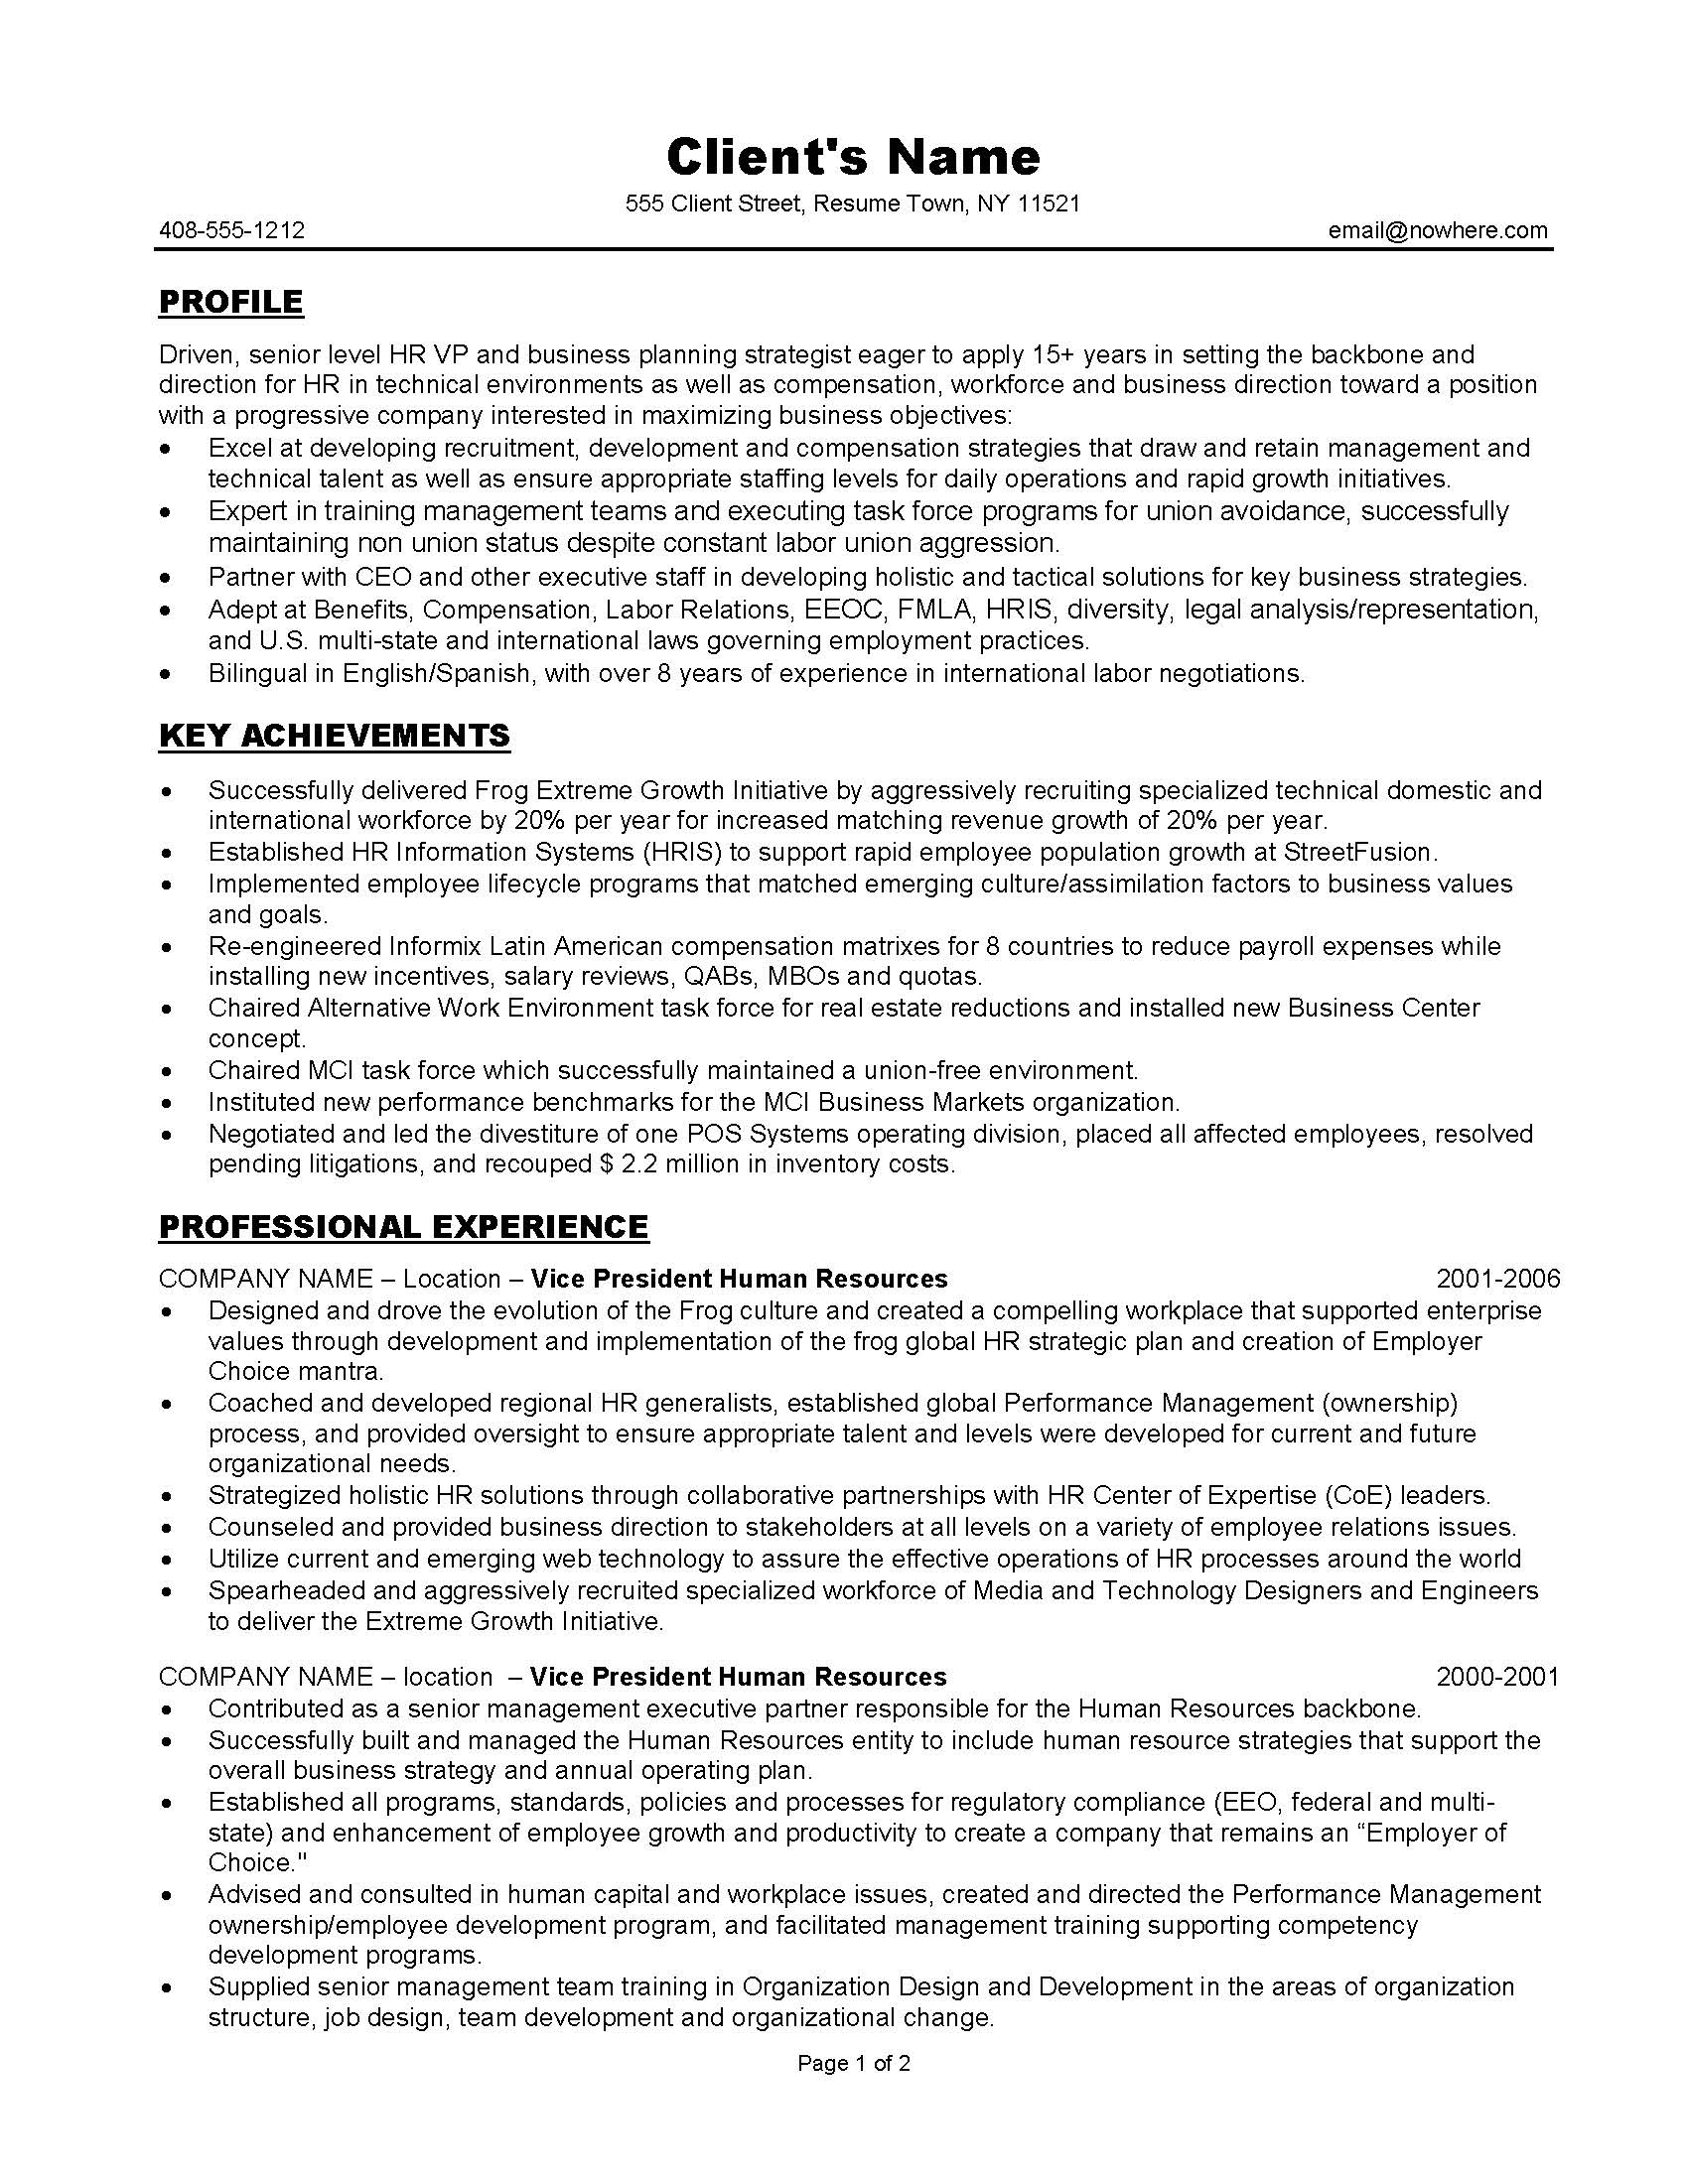 HR management resume sample